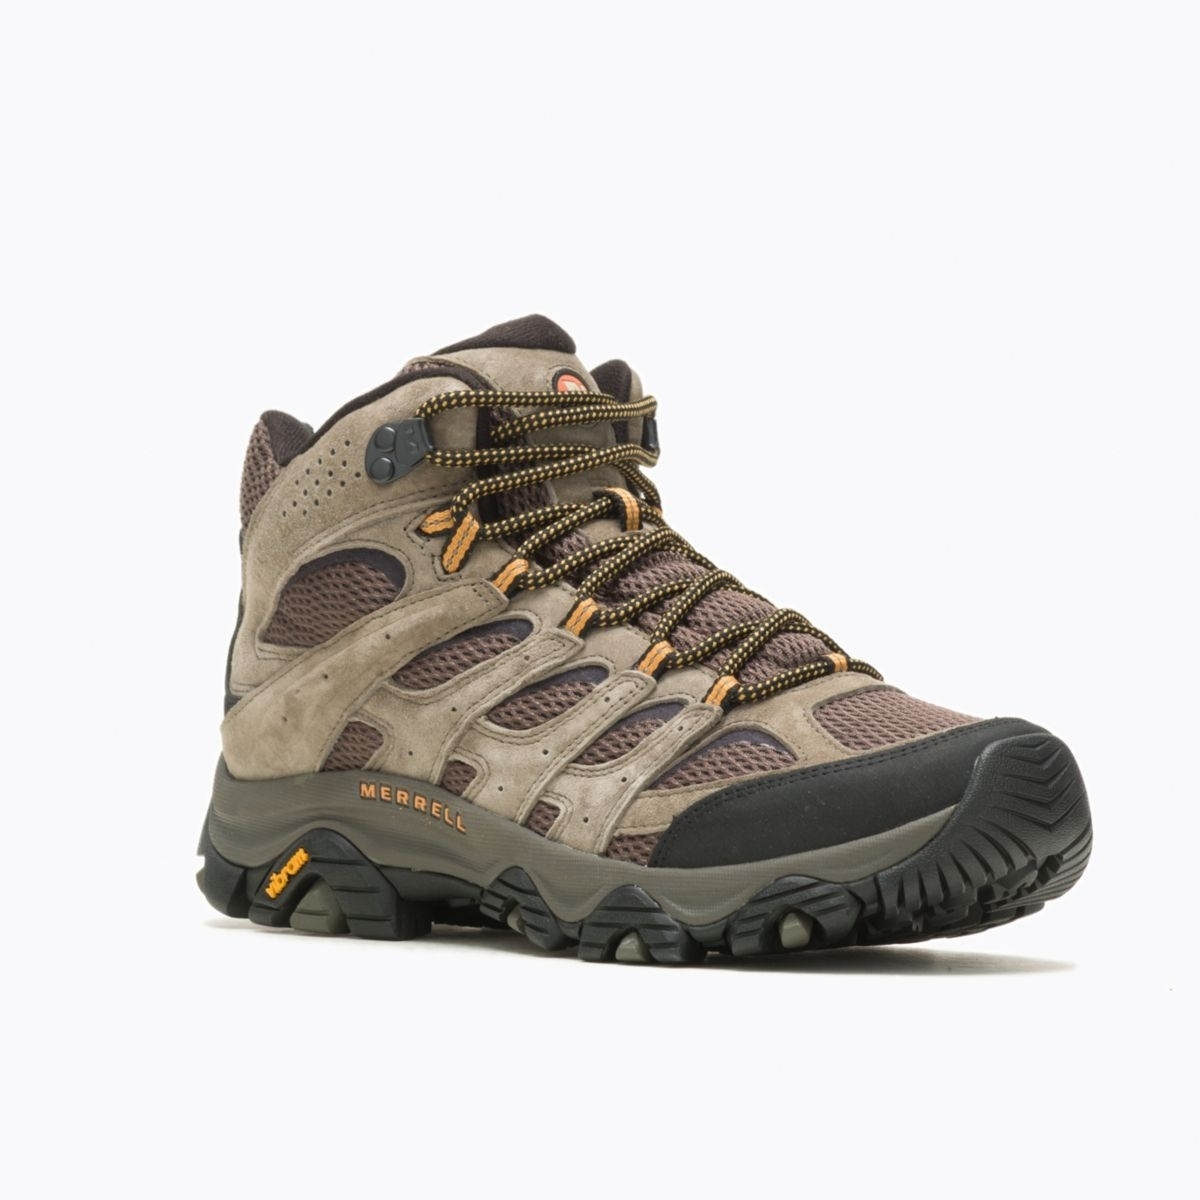 Merrell Men's Moab 3 Mid GORE-TEX Hiking Boot Walnut - J035795 WALNUT - WALNUT, 12